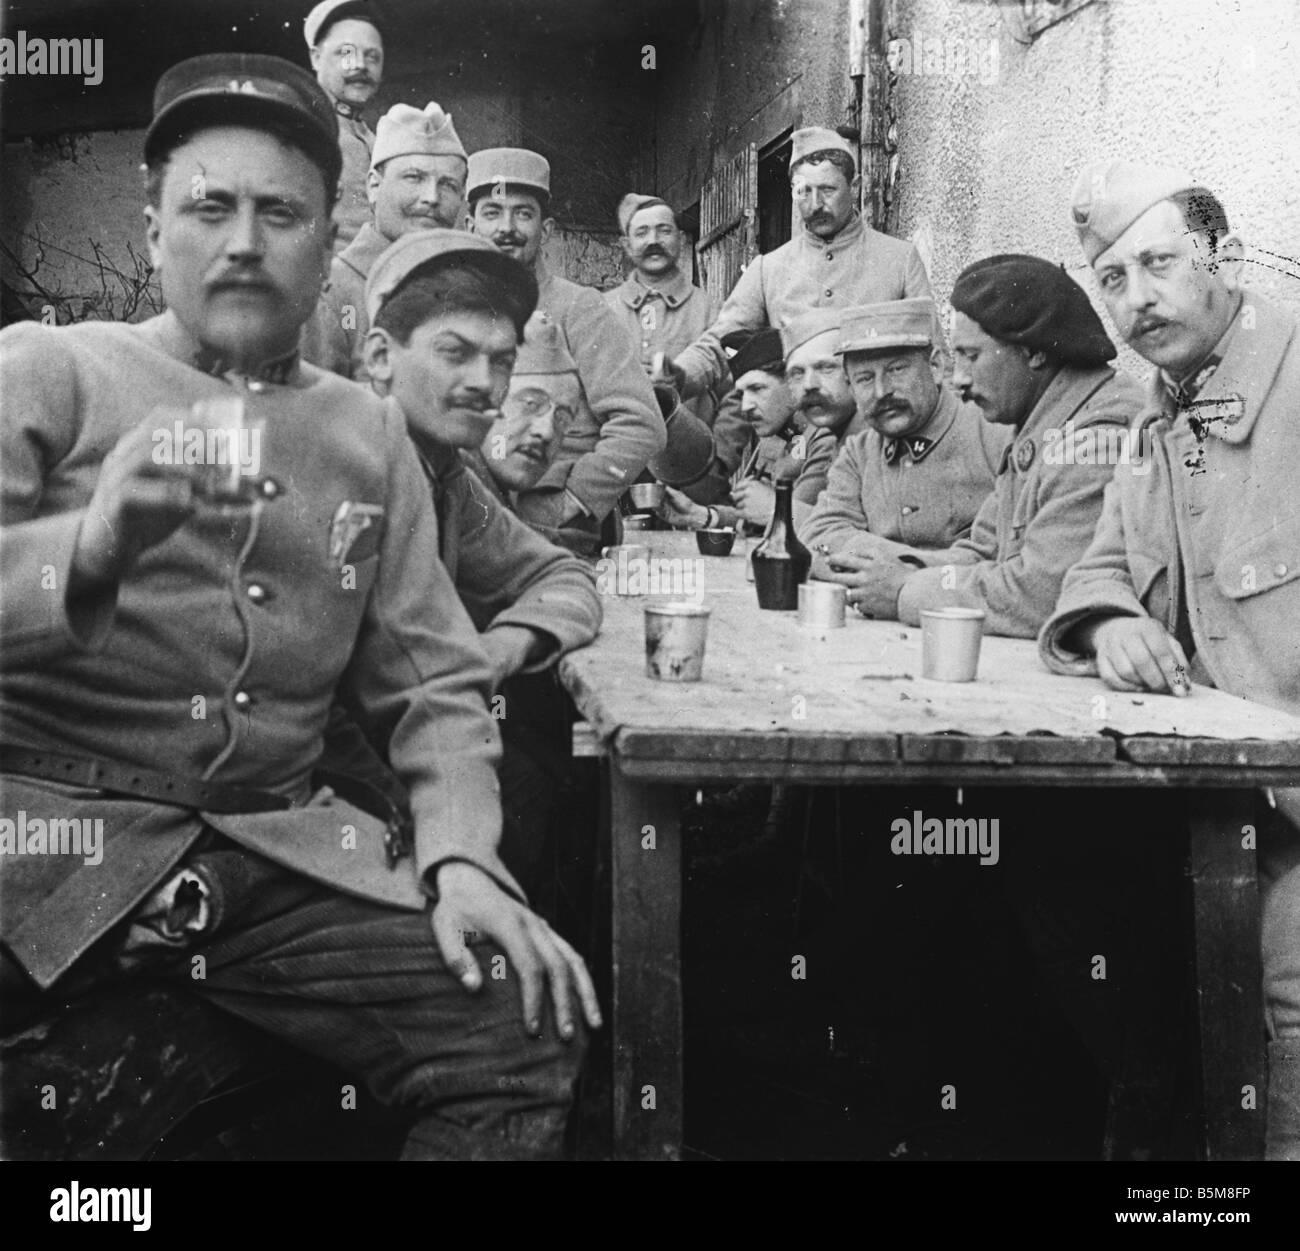 2 G55 F1 1917 20 E WW1 französische Soldaten, Offiziere Foto Geschichte Weltkrieg ein Frankreich Soldaten und Offiziere der französischen Armee Phot Stockfoto